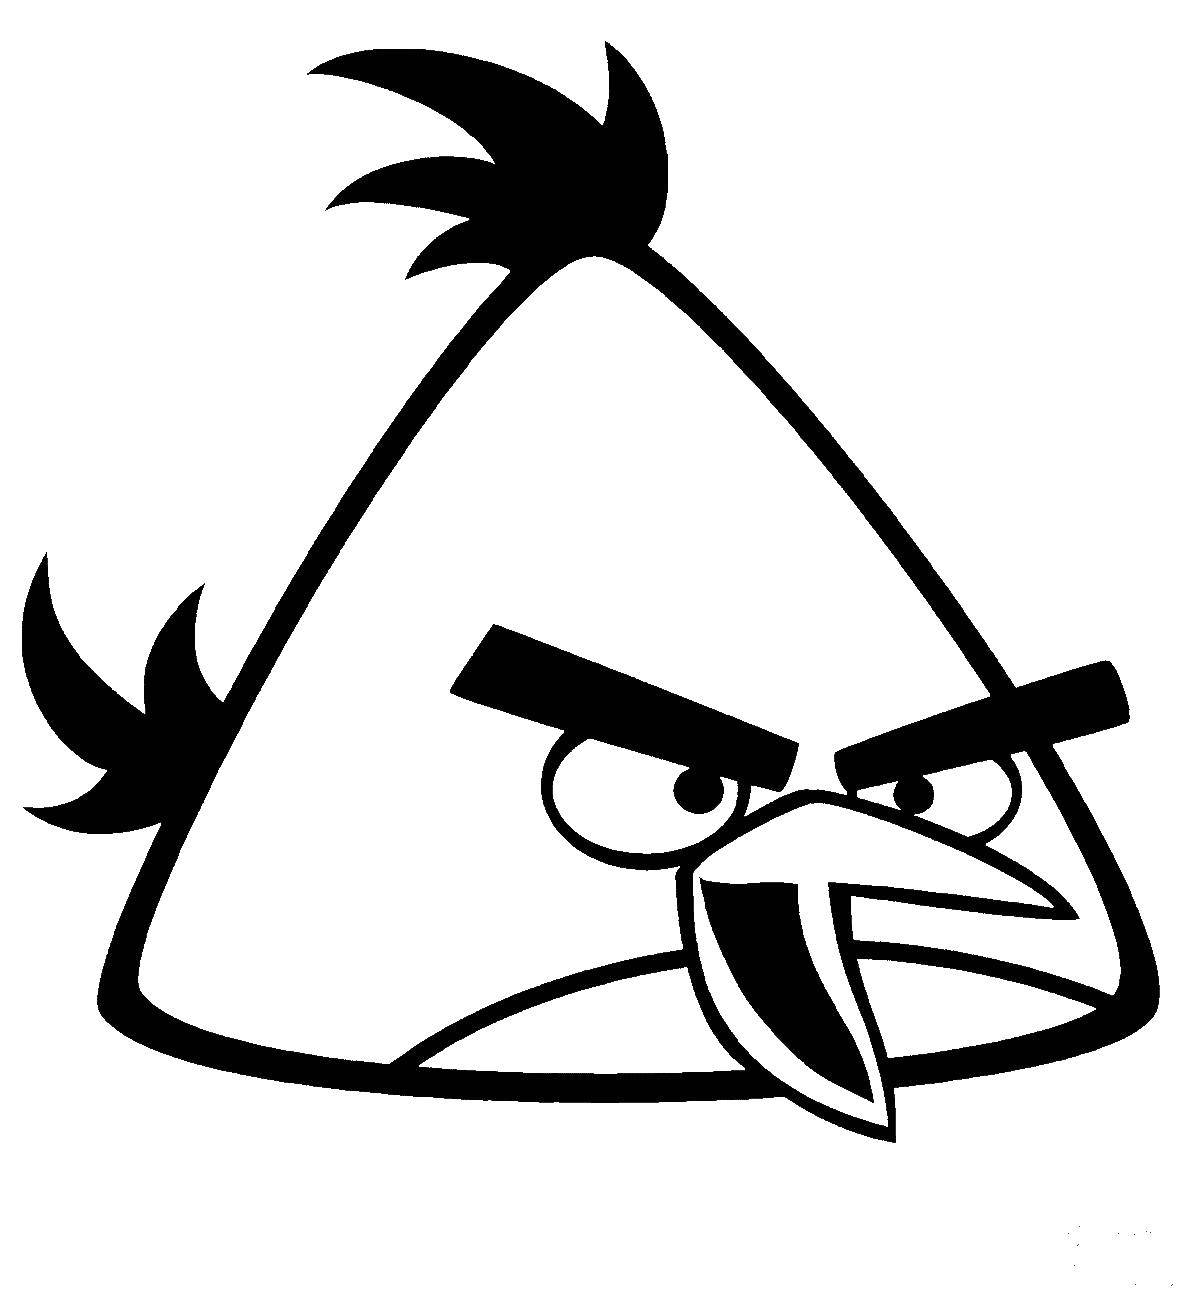 Название: Раскраска Птичка из angry birds . Категория: angry birds. Теги: Игры, Angry Birds .